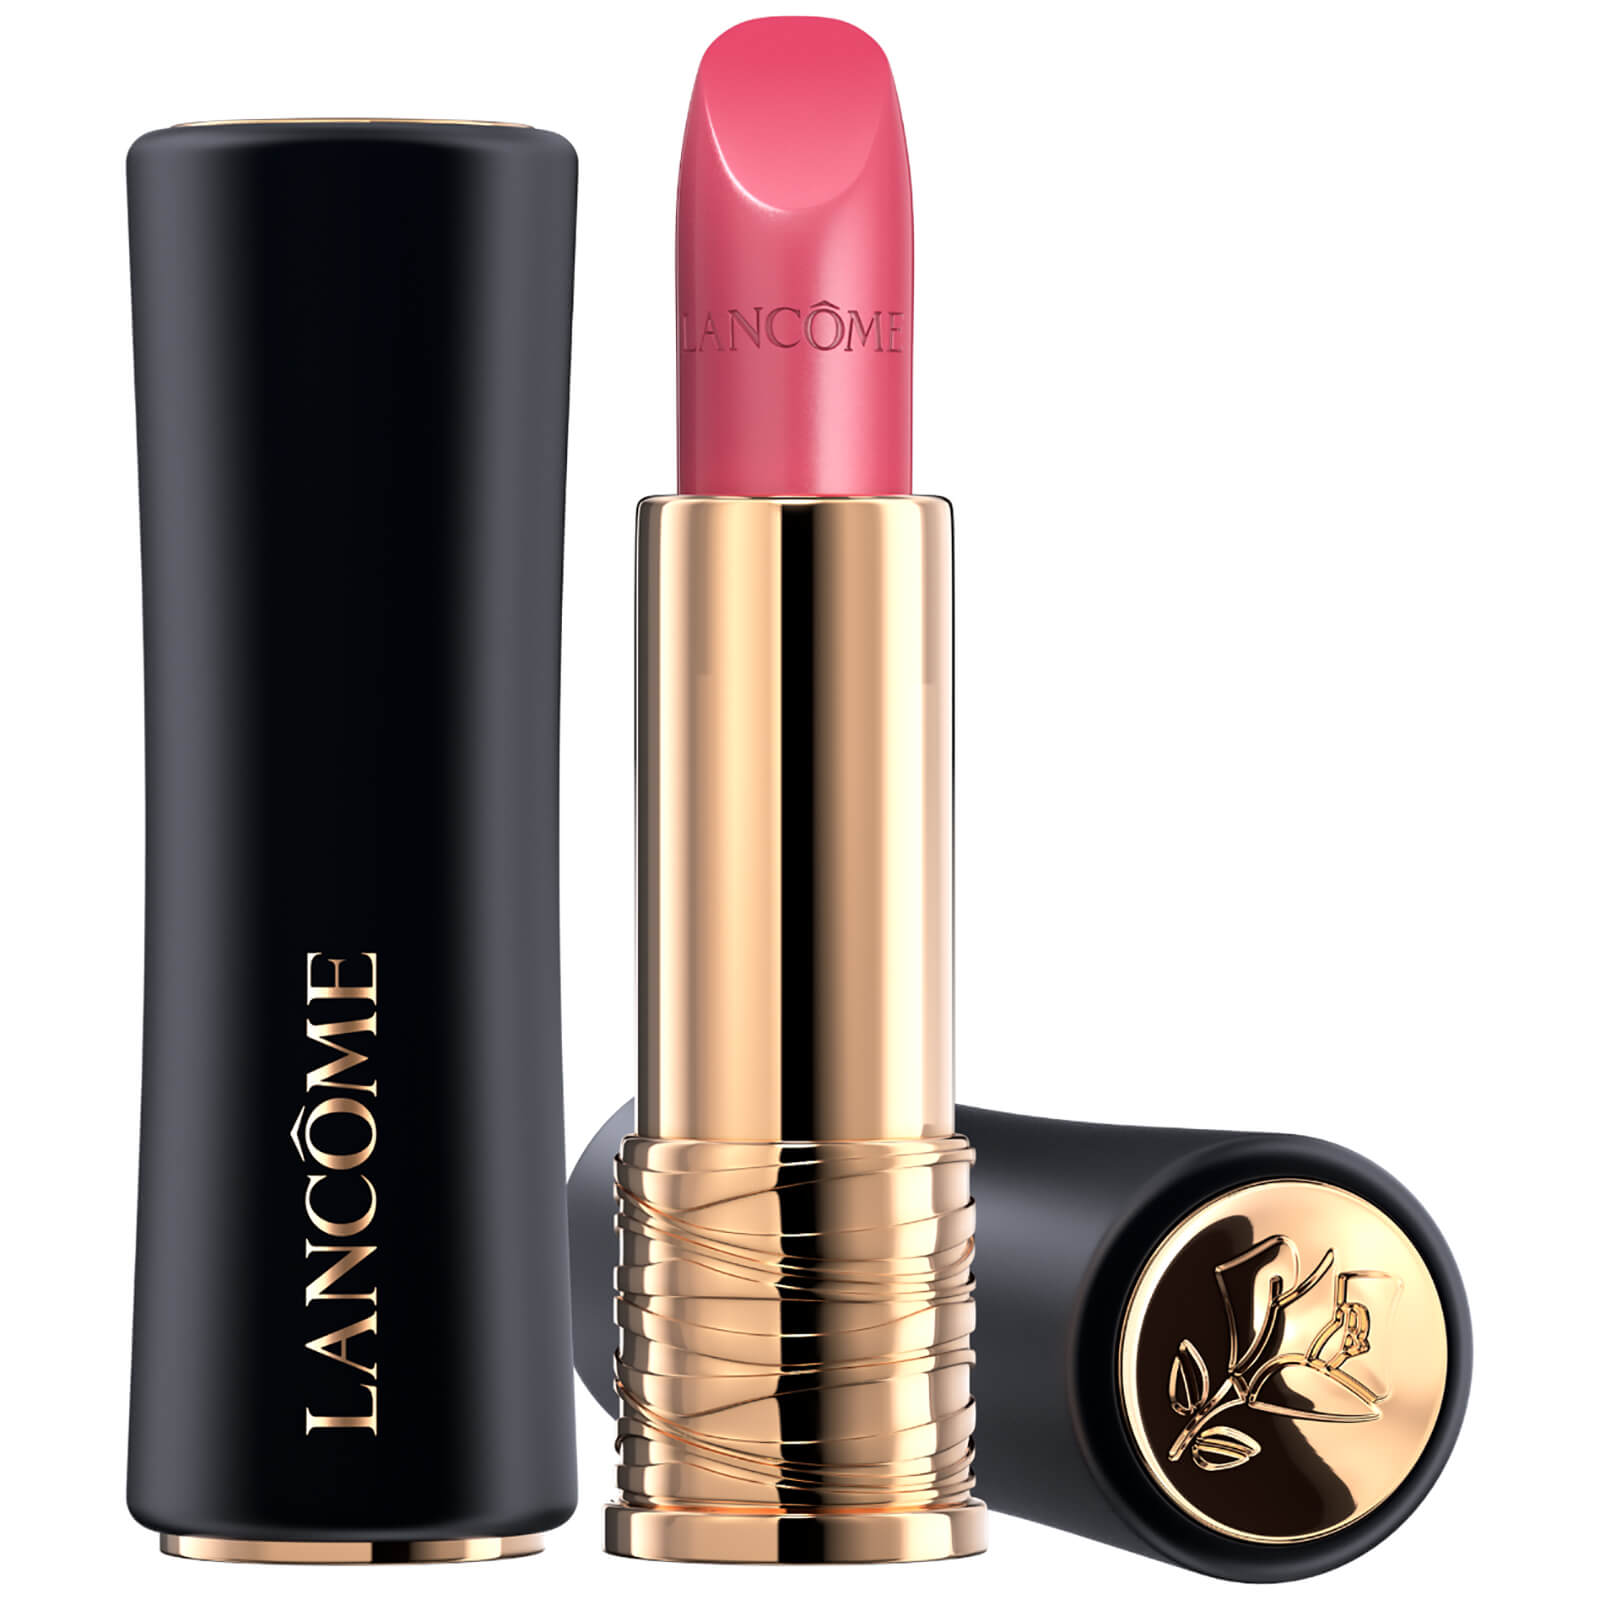 Lancôme L'Absolu Rouge Cream Lipstick 35ml (Verschiedene Farbtöne) - 08 La Vie Est Belle